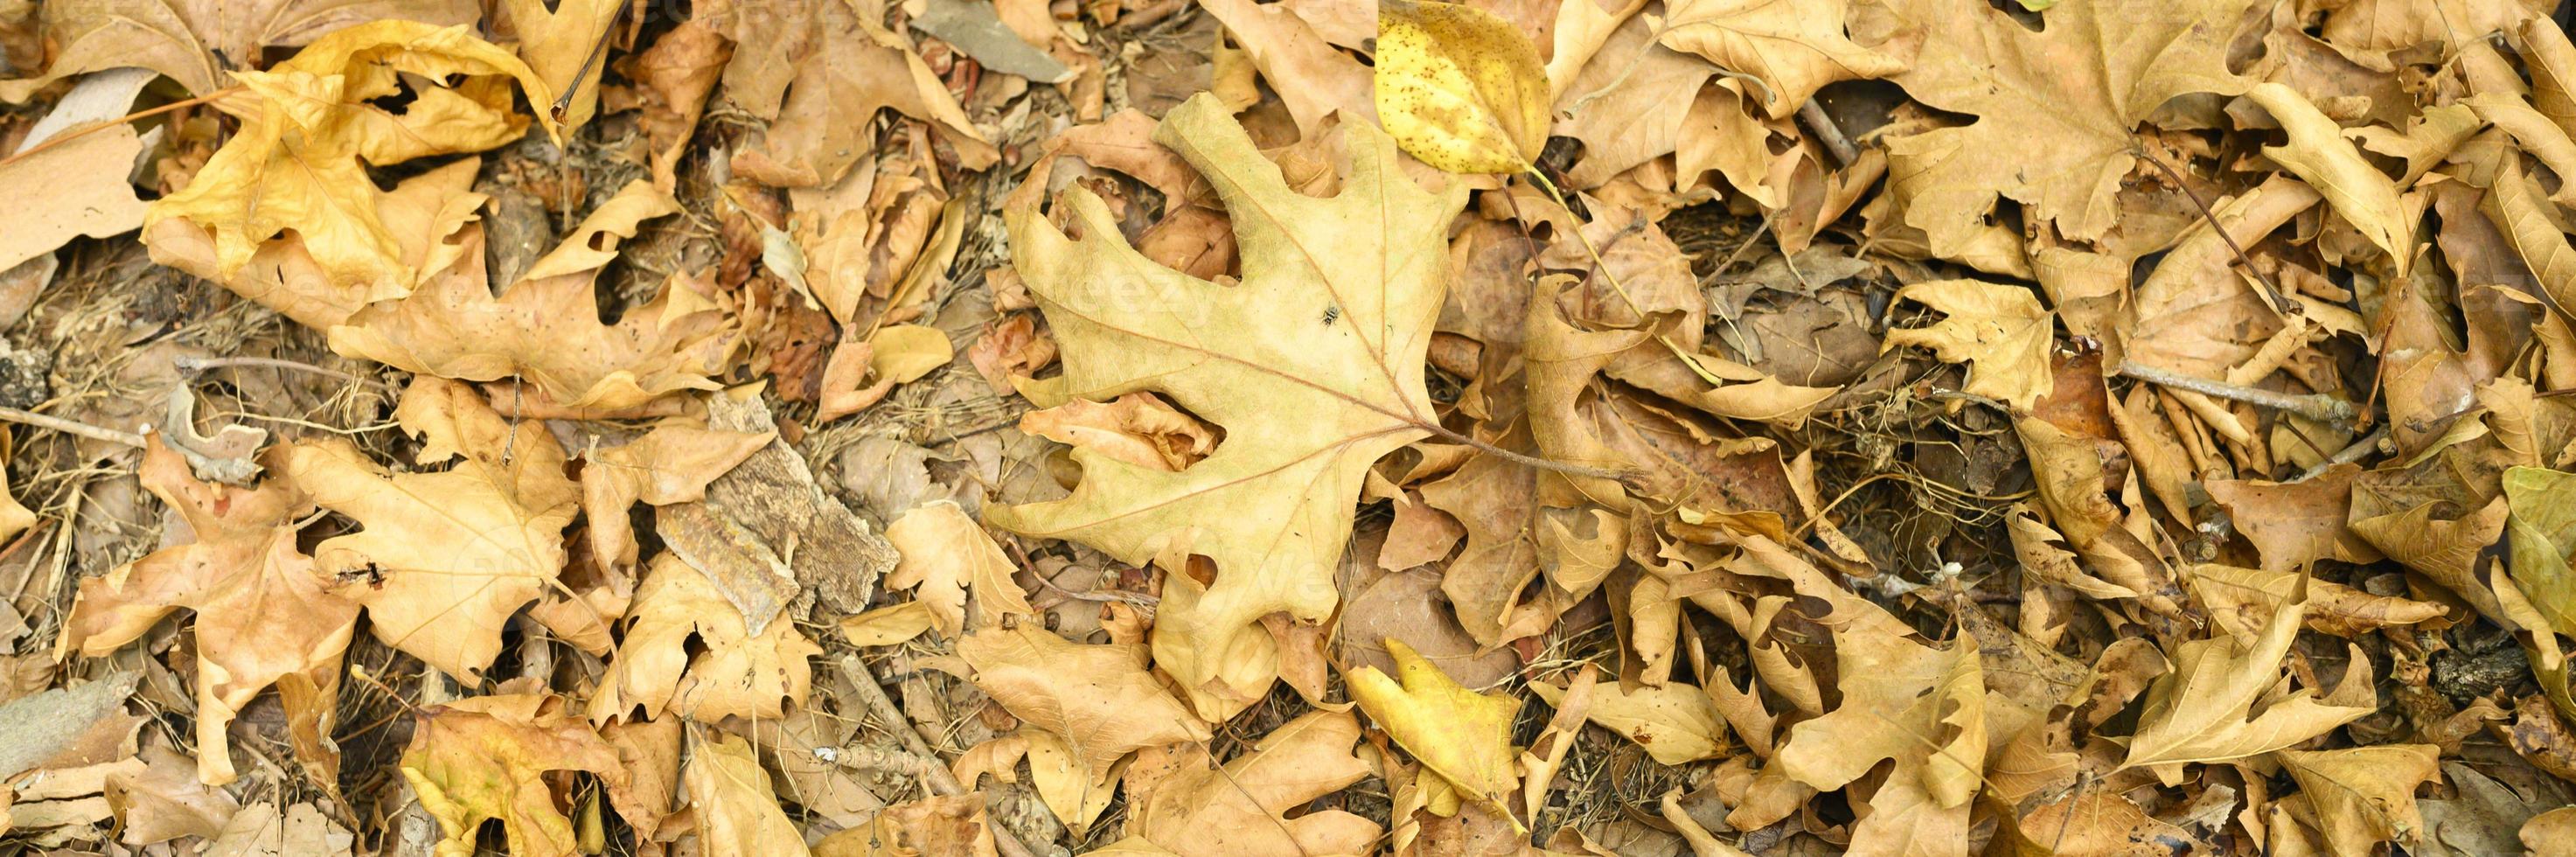 strukturierter Hintergrund des trockenen verwelkten gefallenen Herbstlaubs der Ahornbäume foto